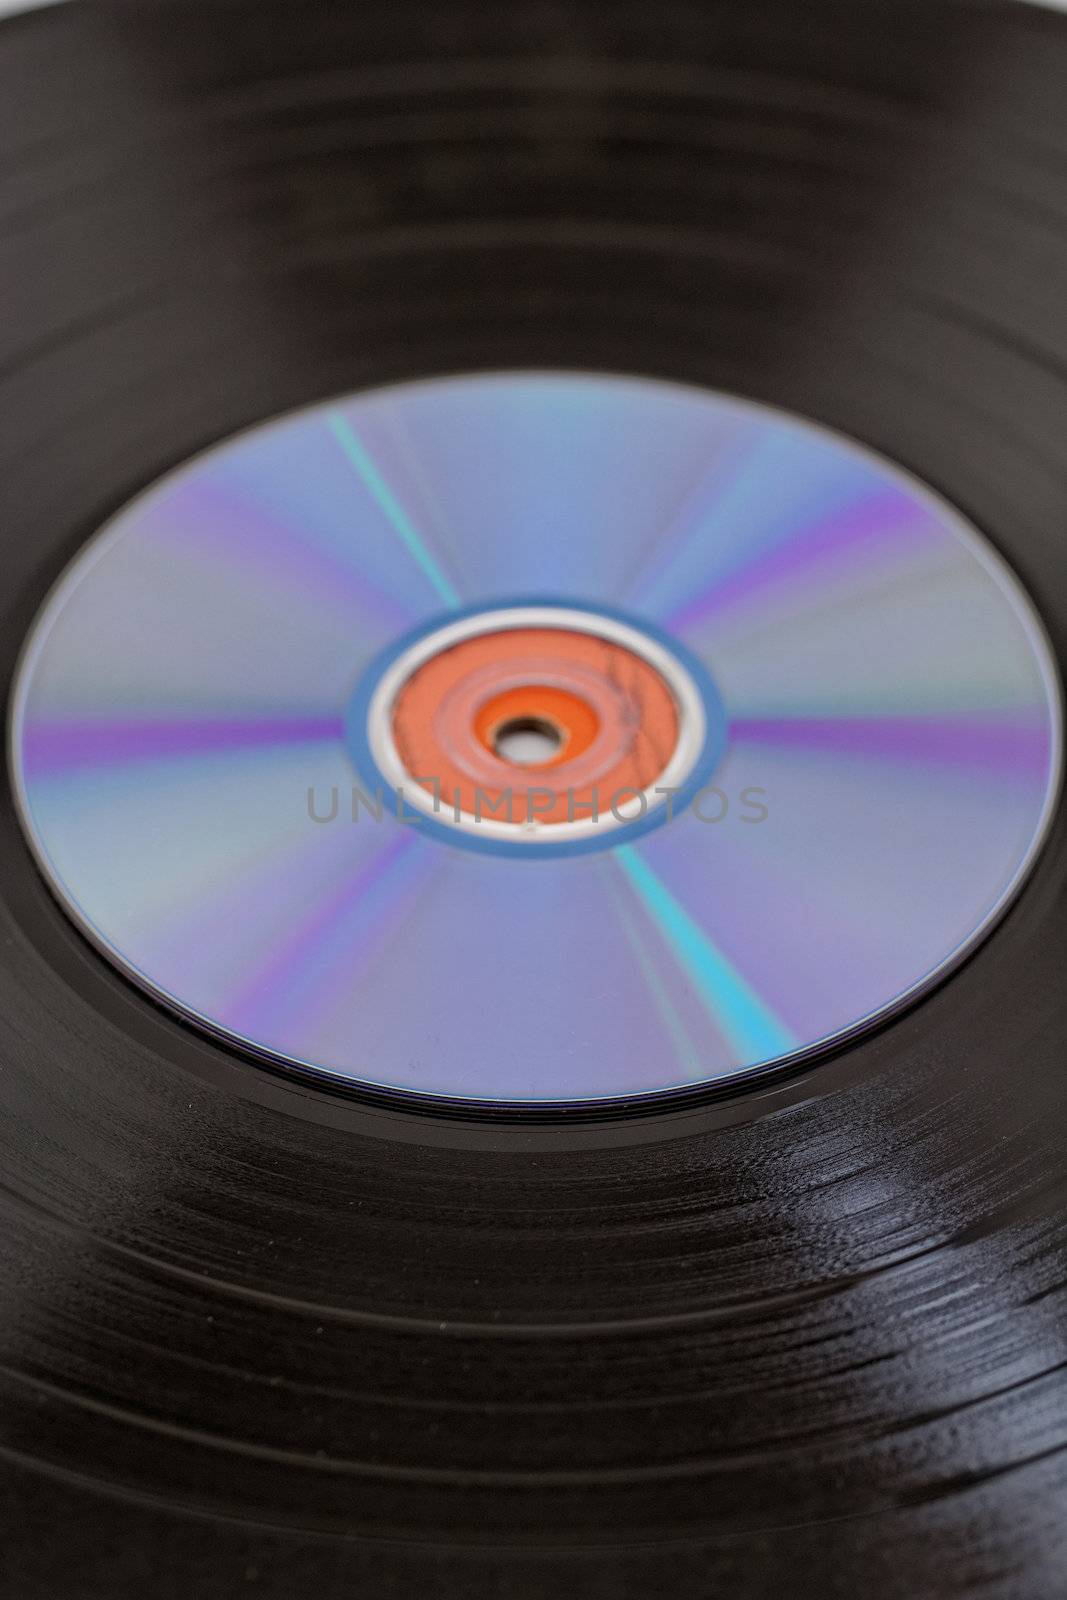 vinyl record and CD by NagyDodo